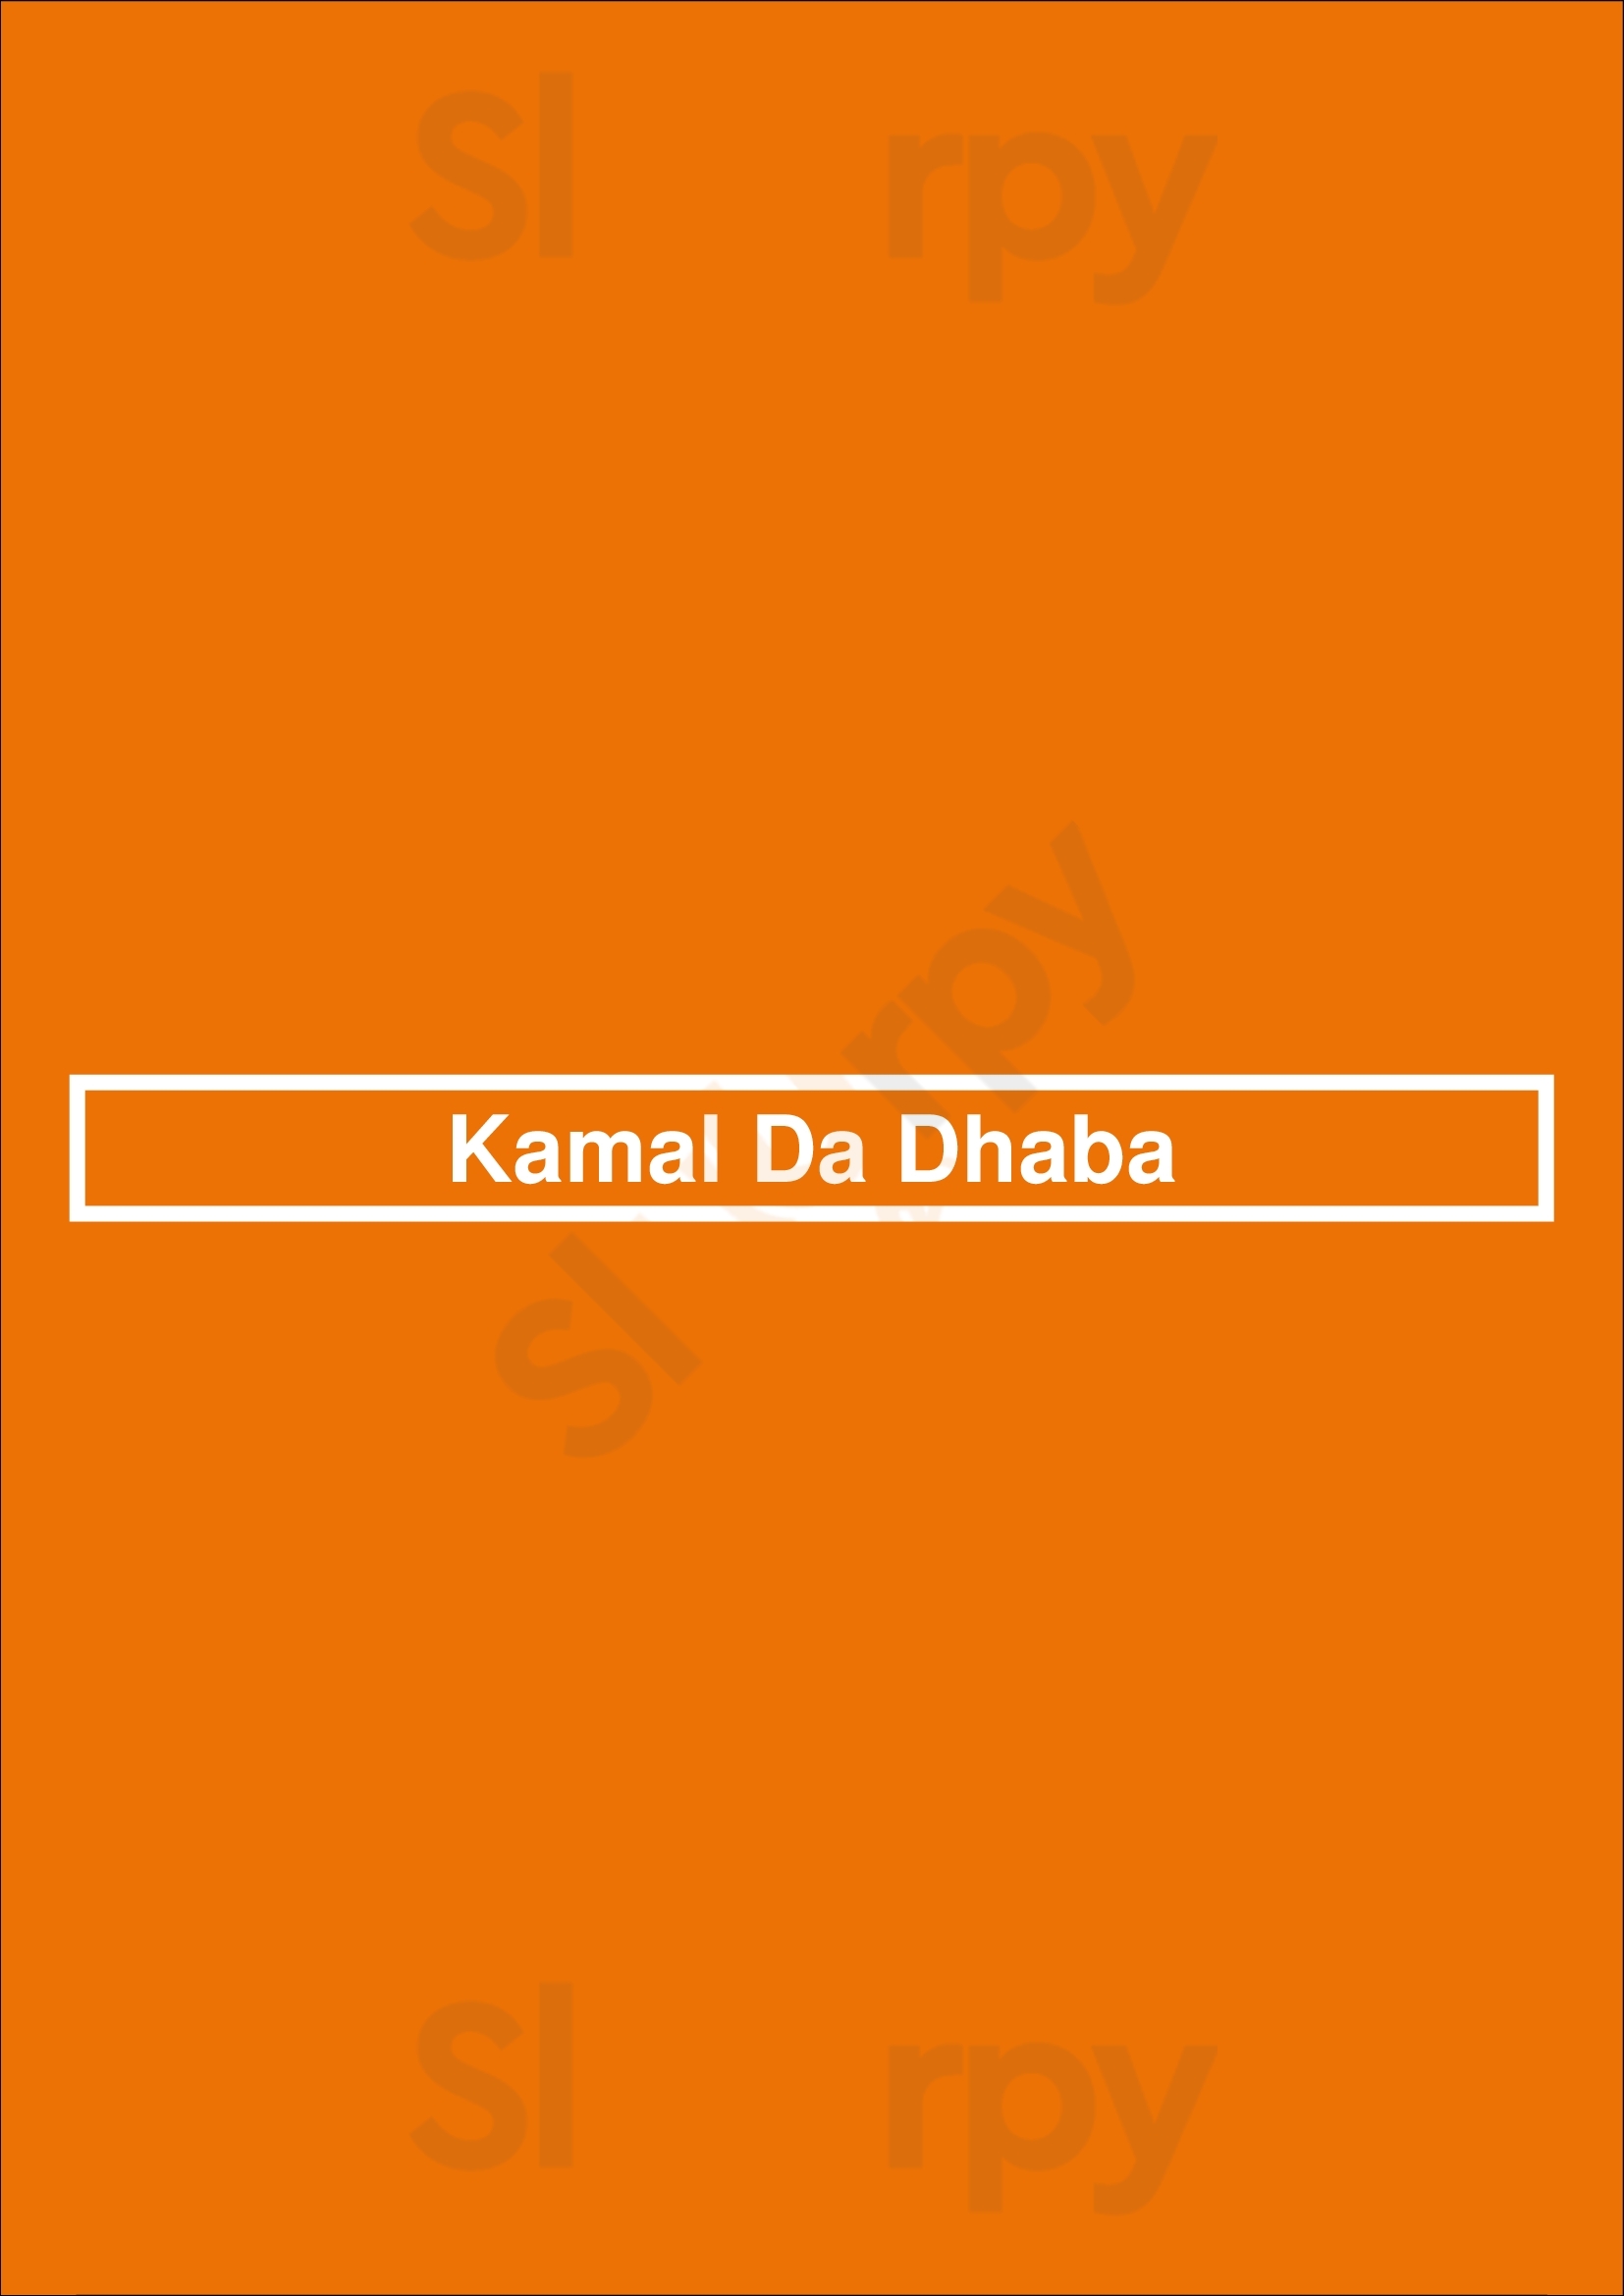 Kamal Da Dhaba Kent Menu - 1